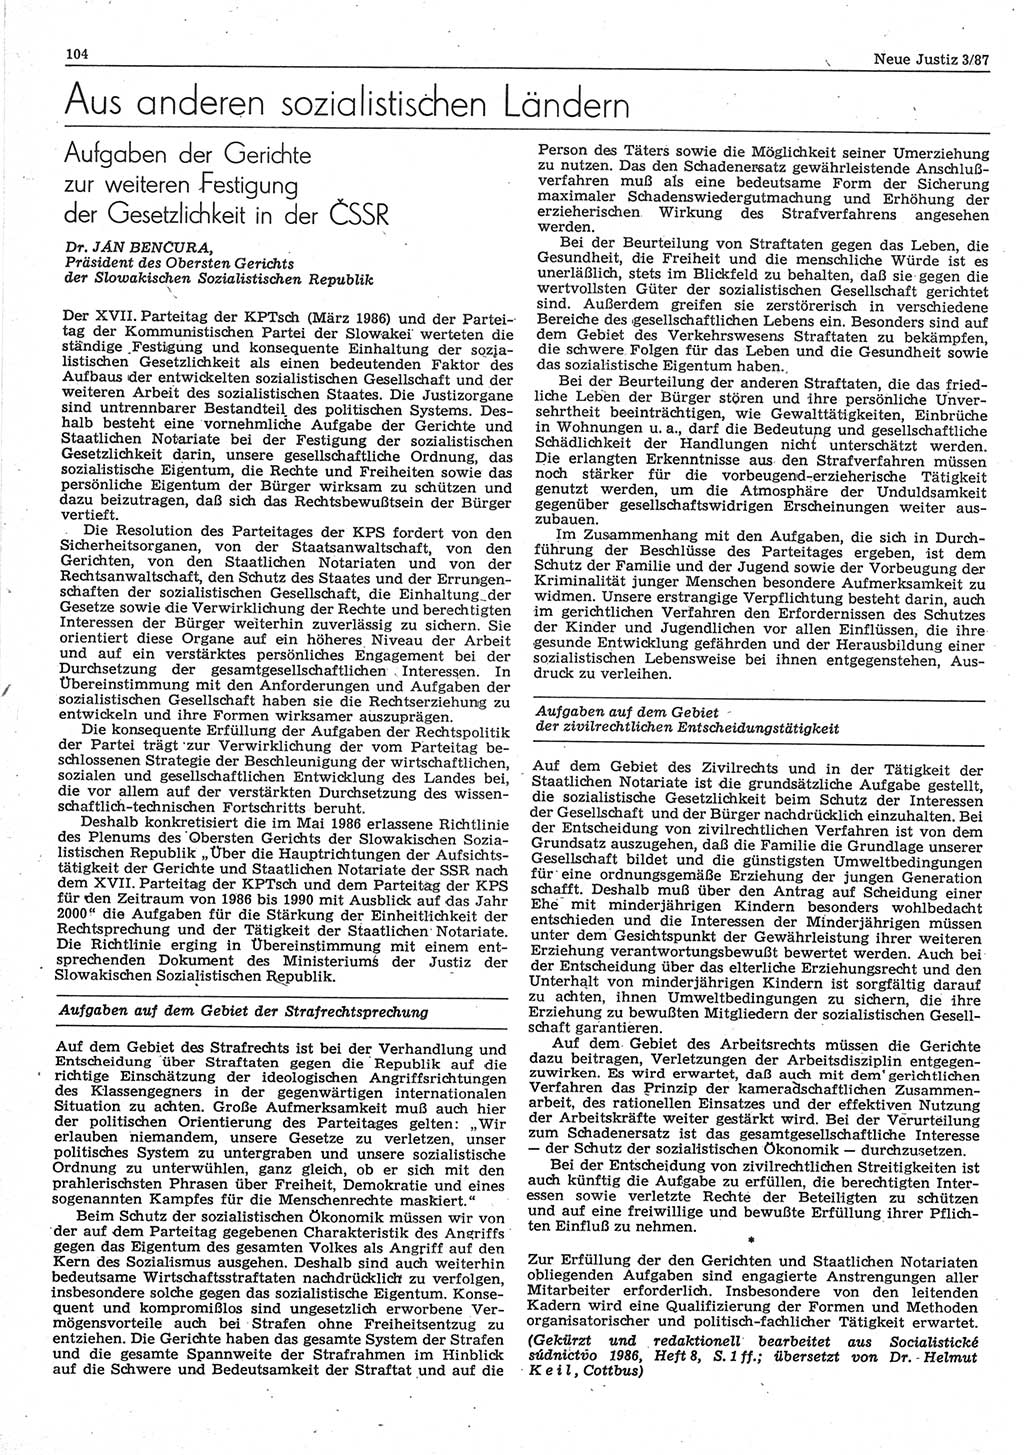 Neue Justiz (NJ), Zeitschrift für sozialistisches Recht und Gesetzlichkeit [Deutsche Demokratische Republik (DDR)], 41. Jahrgang 1987, Seite 104 (NJ DDR 1987, S. 104)